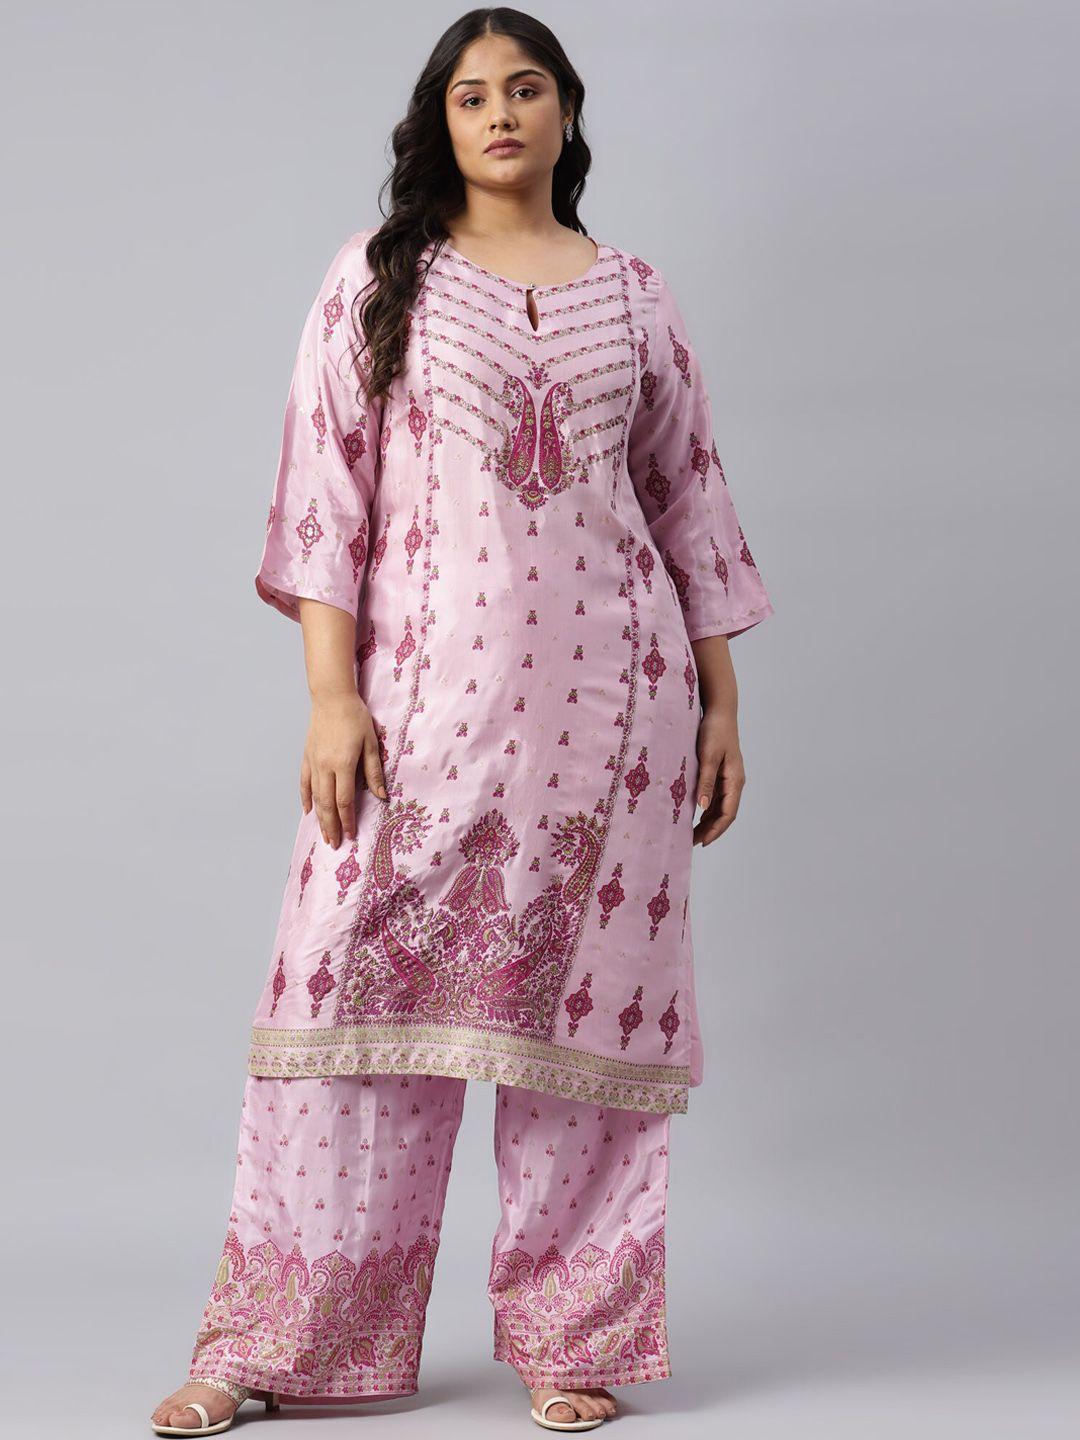 w women pink ethnic motifs printed flared sleeves pastels kaftan kurta